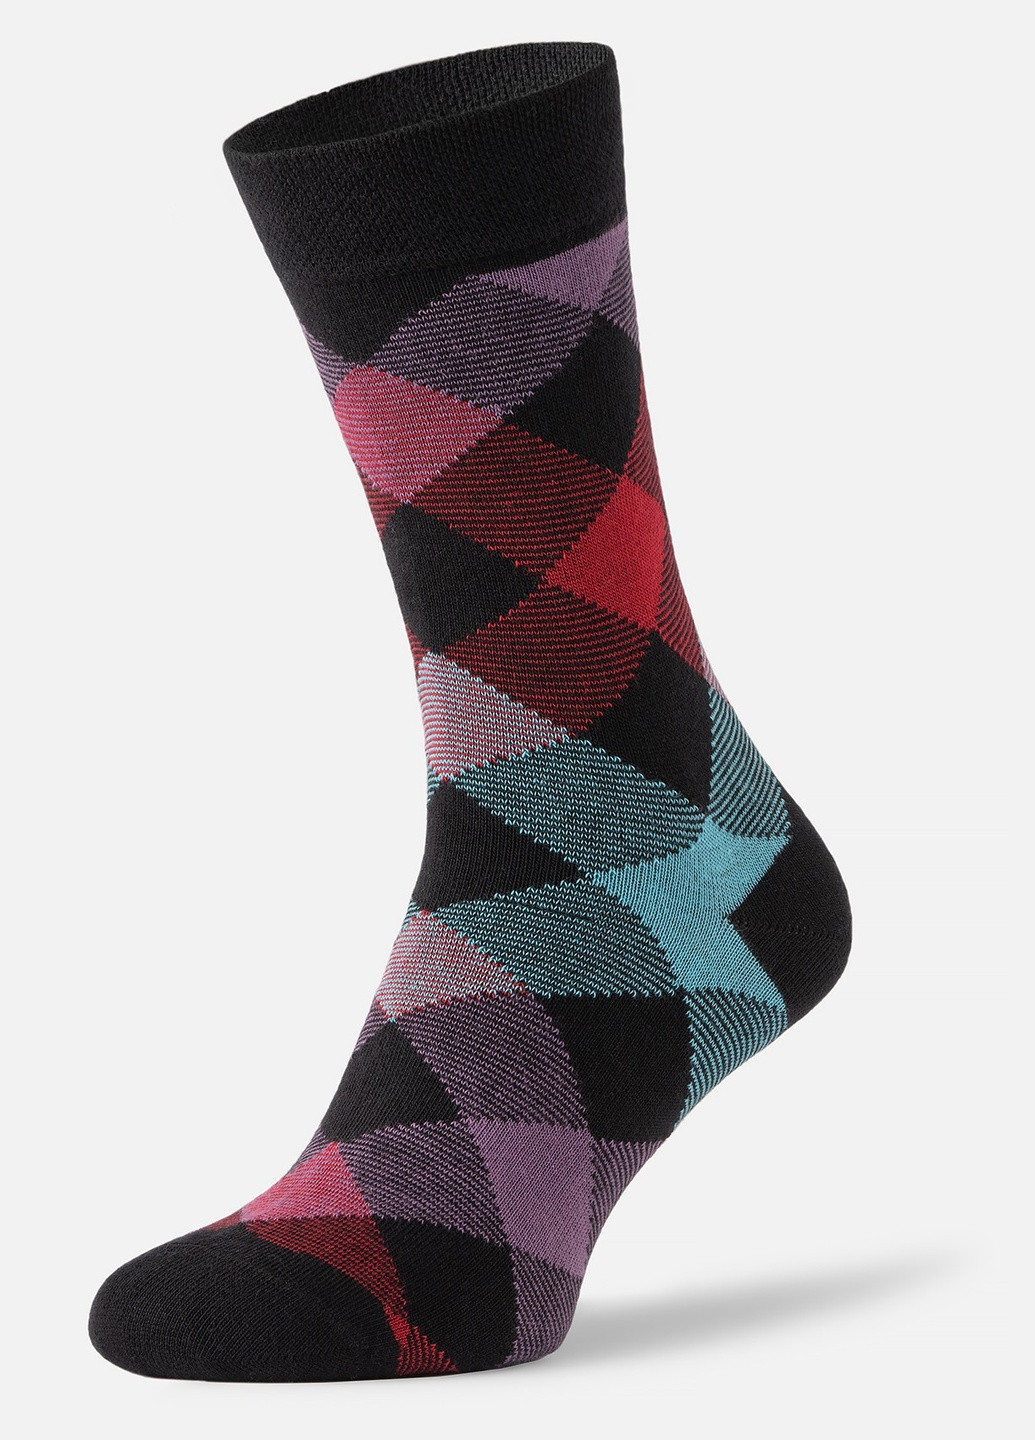 Шкарпетки з принтом ромби високі безшовні дихаючі якісні ORGANIC cotton чорні носки 39-41 men's арт. 31020 JILL ANTONY (258614261)